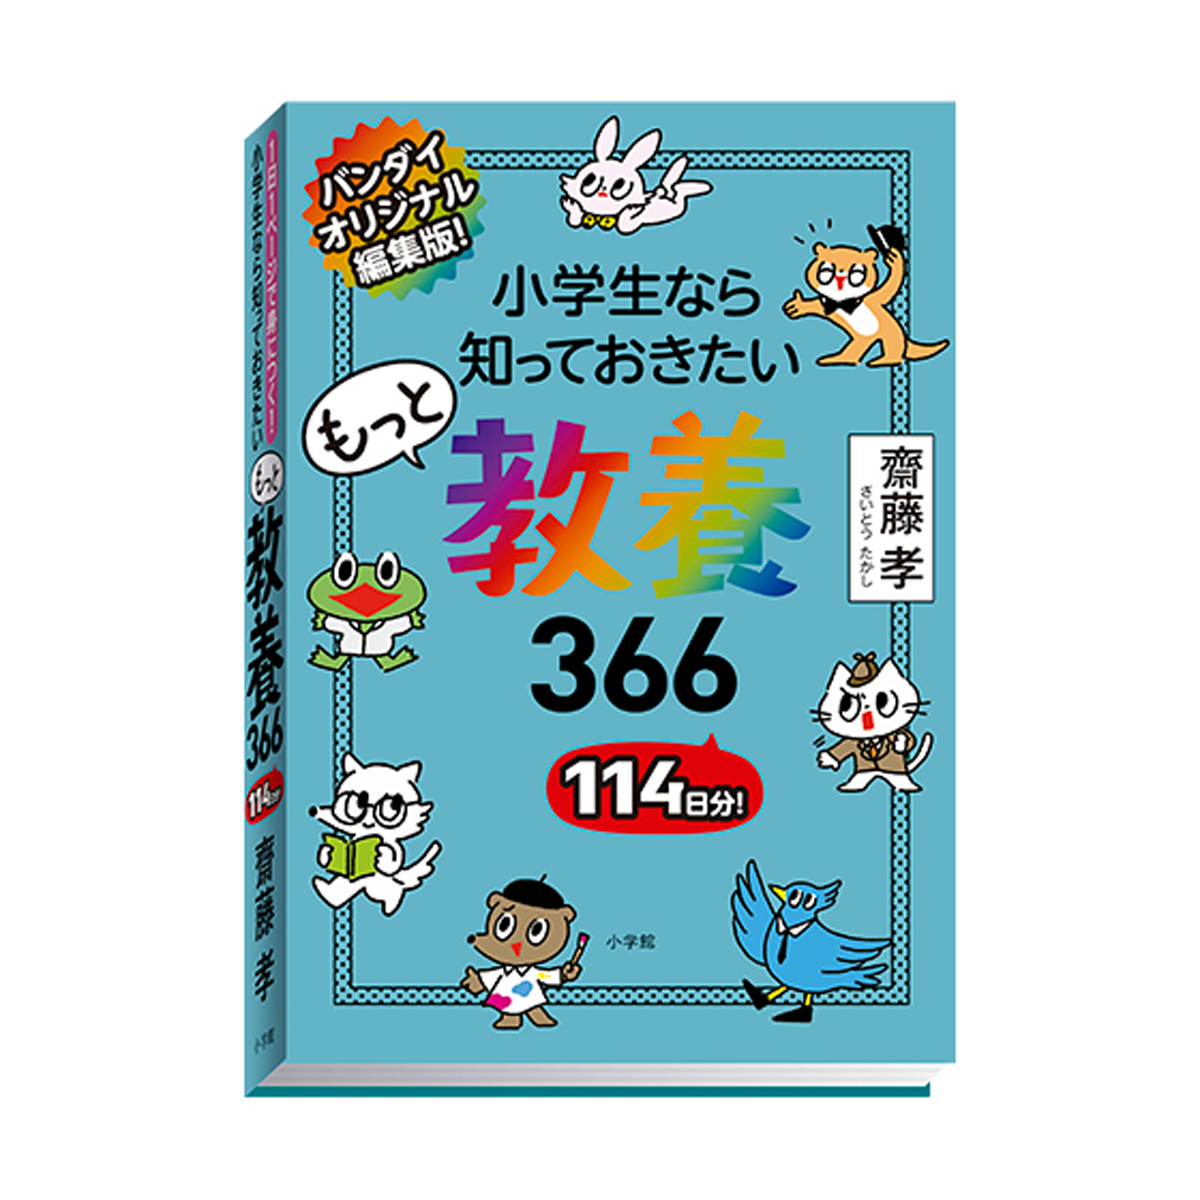 豆ガシャ本 教養366 シリーズ | ナムコパークス オンラインストア